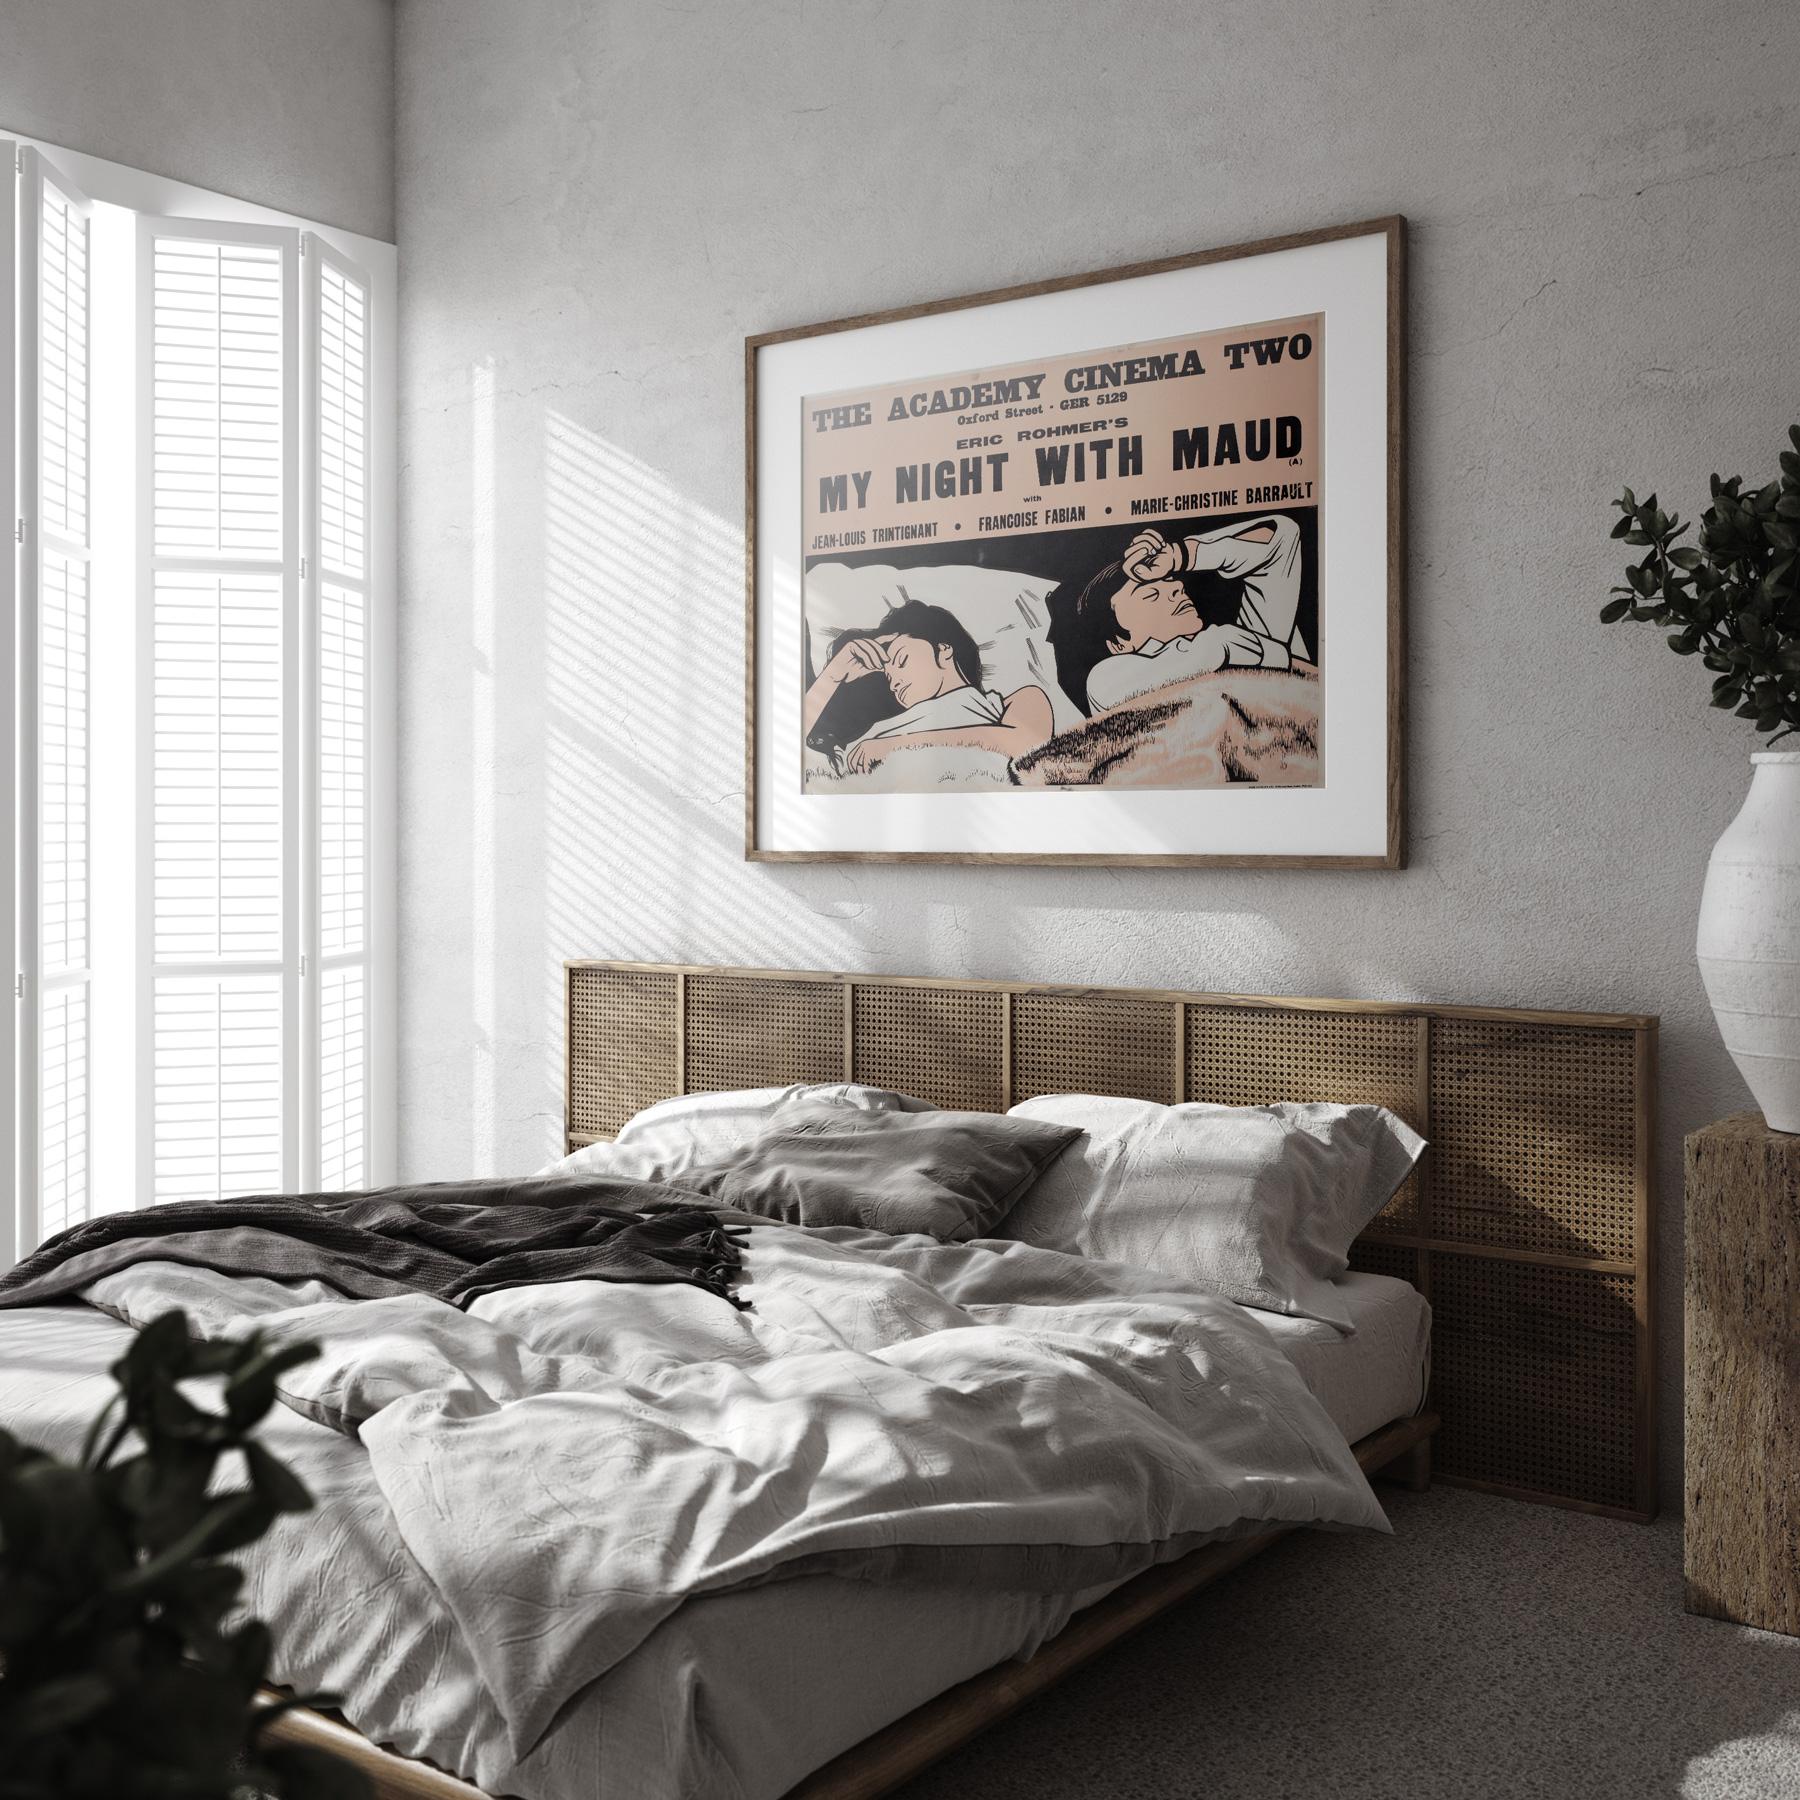 L'affiche originale du film Ma nuit chez Maud d'Éric Rohmer, conçue par Peter Strausfeld pour Academy Cinema. L'une de nos préférées parmi toutes les créations de Strausfeld.

Strausfeld, né à Cologne, est arrivé en Angleterre en 1938. Alors qu'il